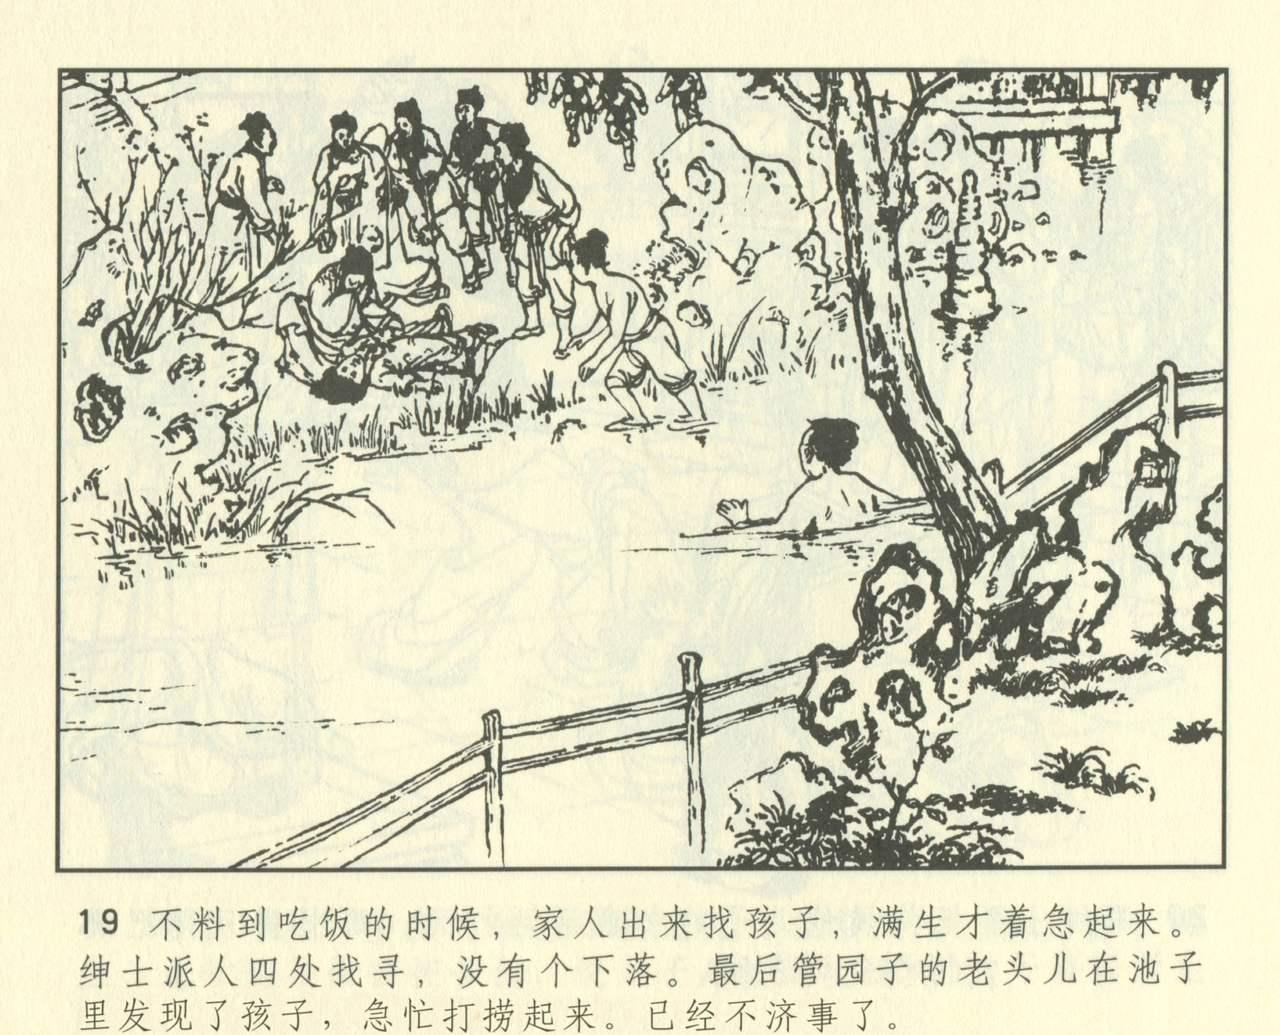 聊斋志异 张玮等绘 天津人民美术出版社 卷二十一 ~ 三十 430